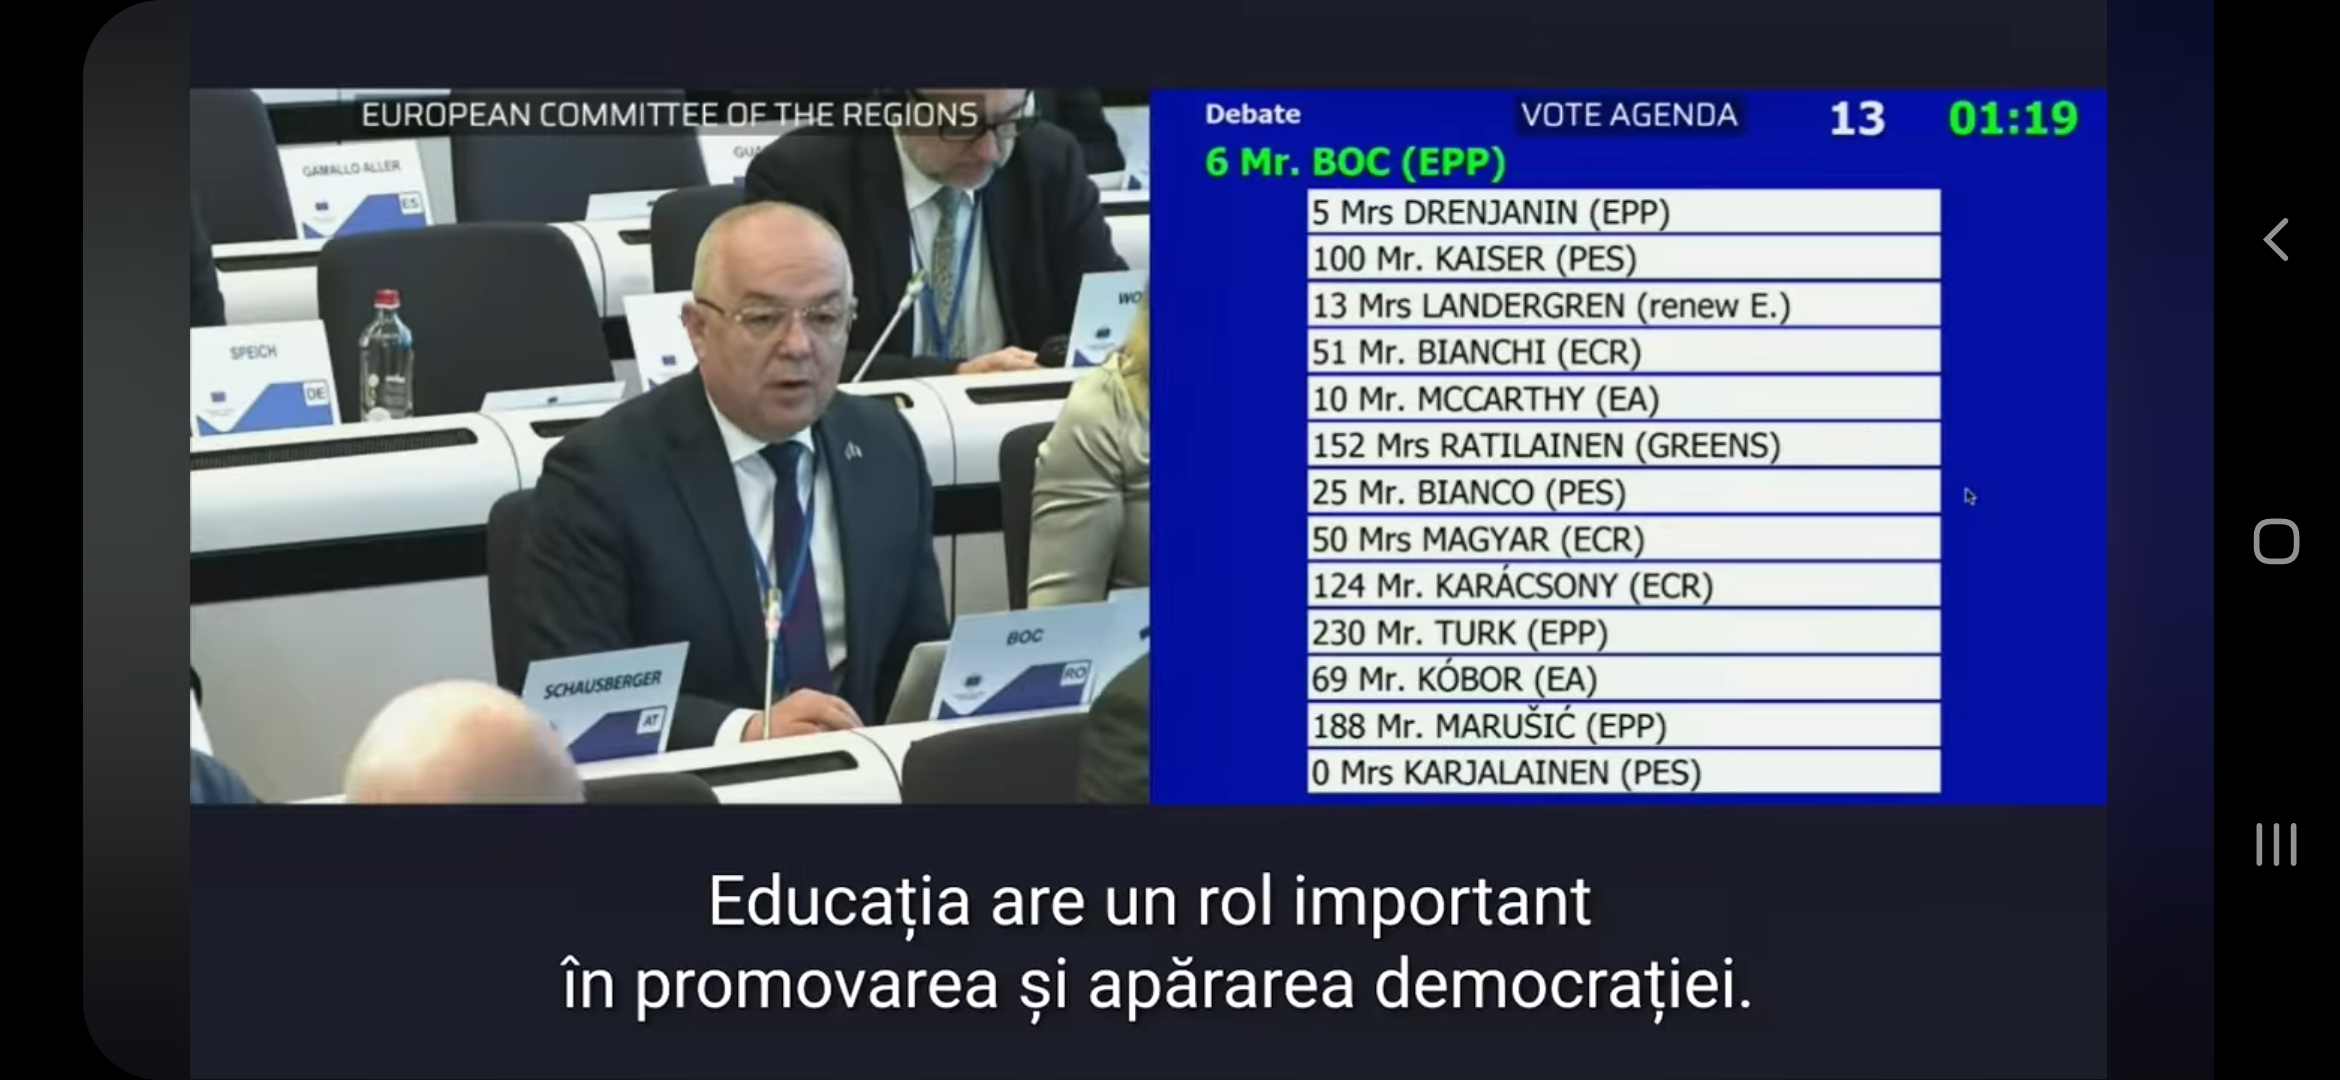 Primarul Emil Boc a ținut o pledoarie la Bruxelles despre educația în promovarea democrației